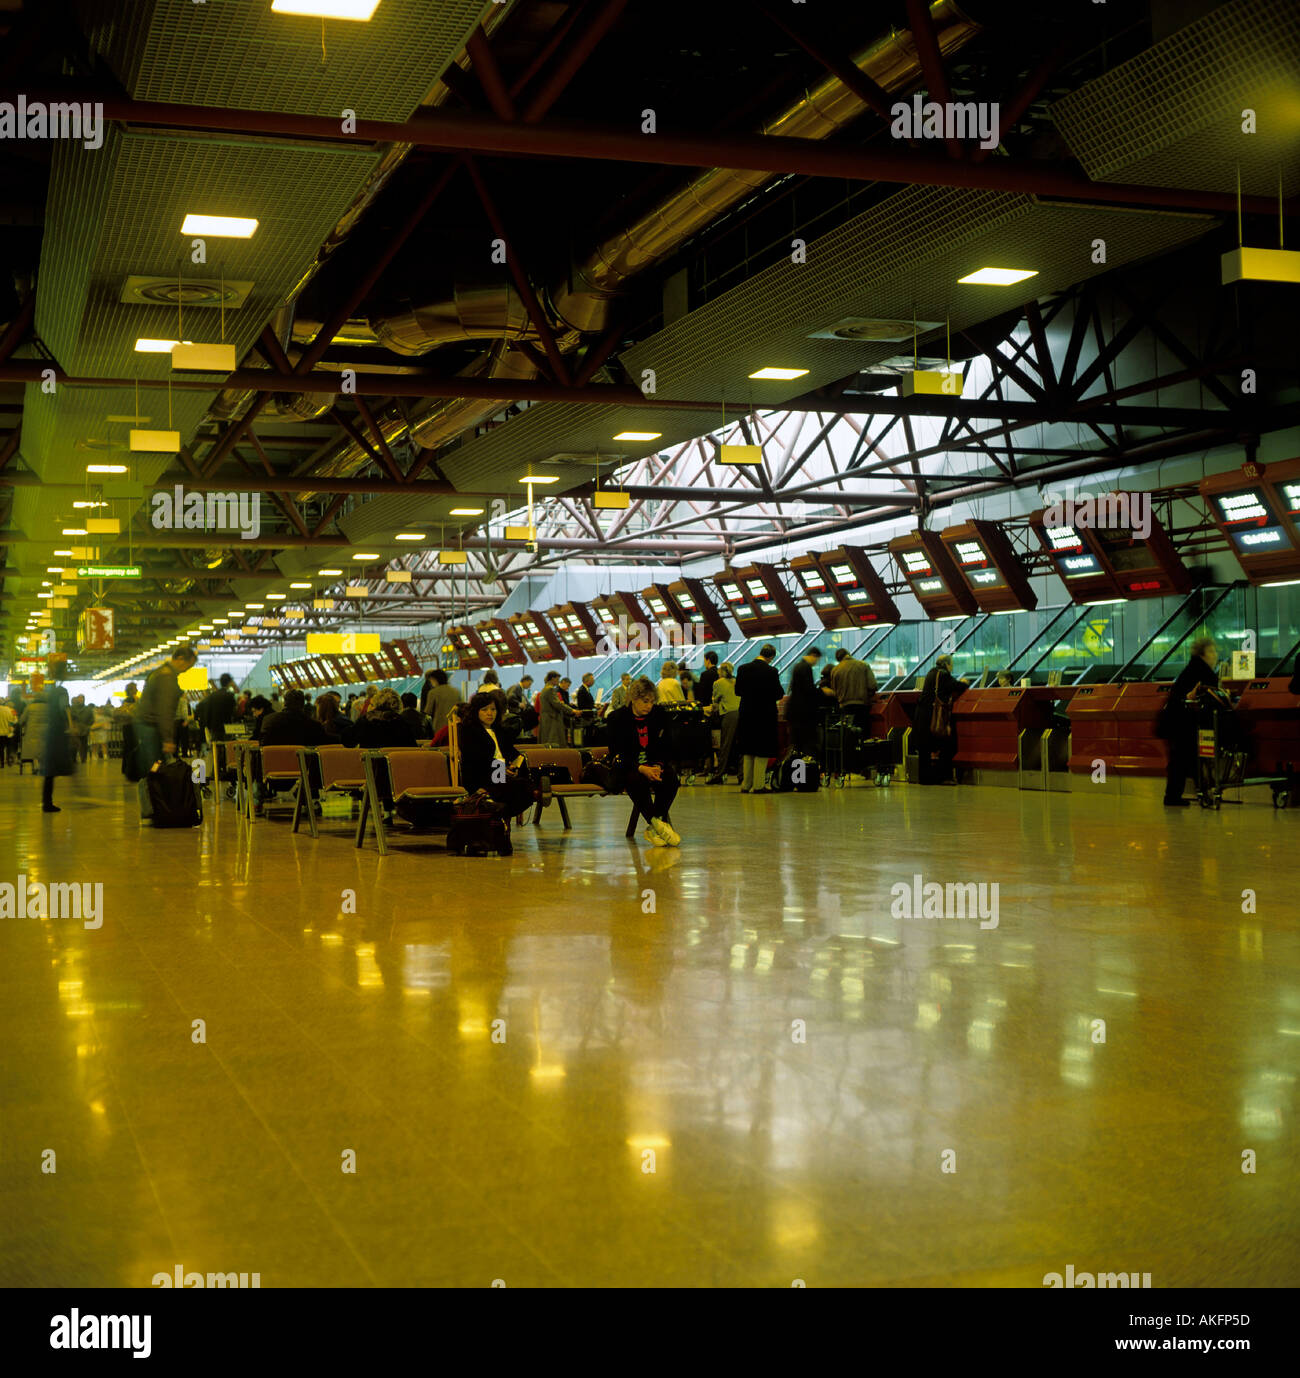 Terminal 4 des Heathrow Airport City of London England Großbritannien redaktionellen Gebrauch Stockfoto